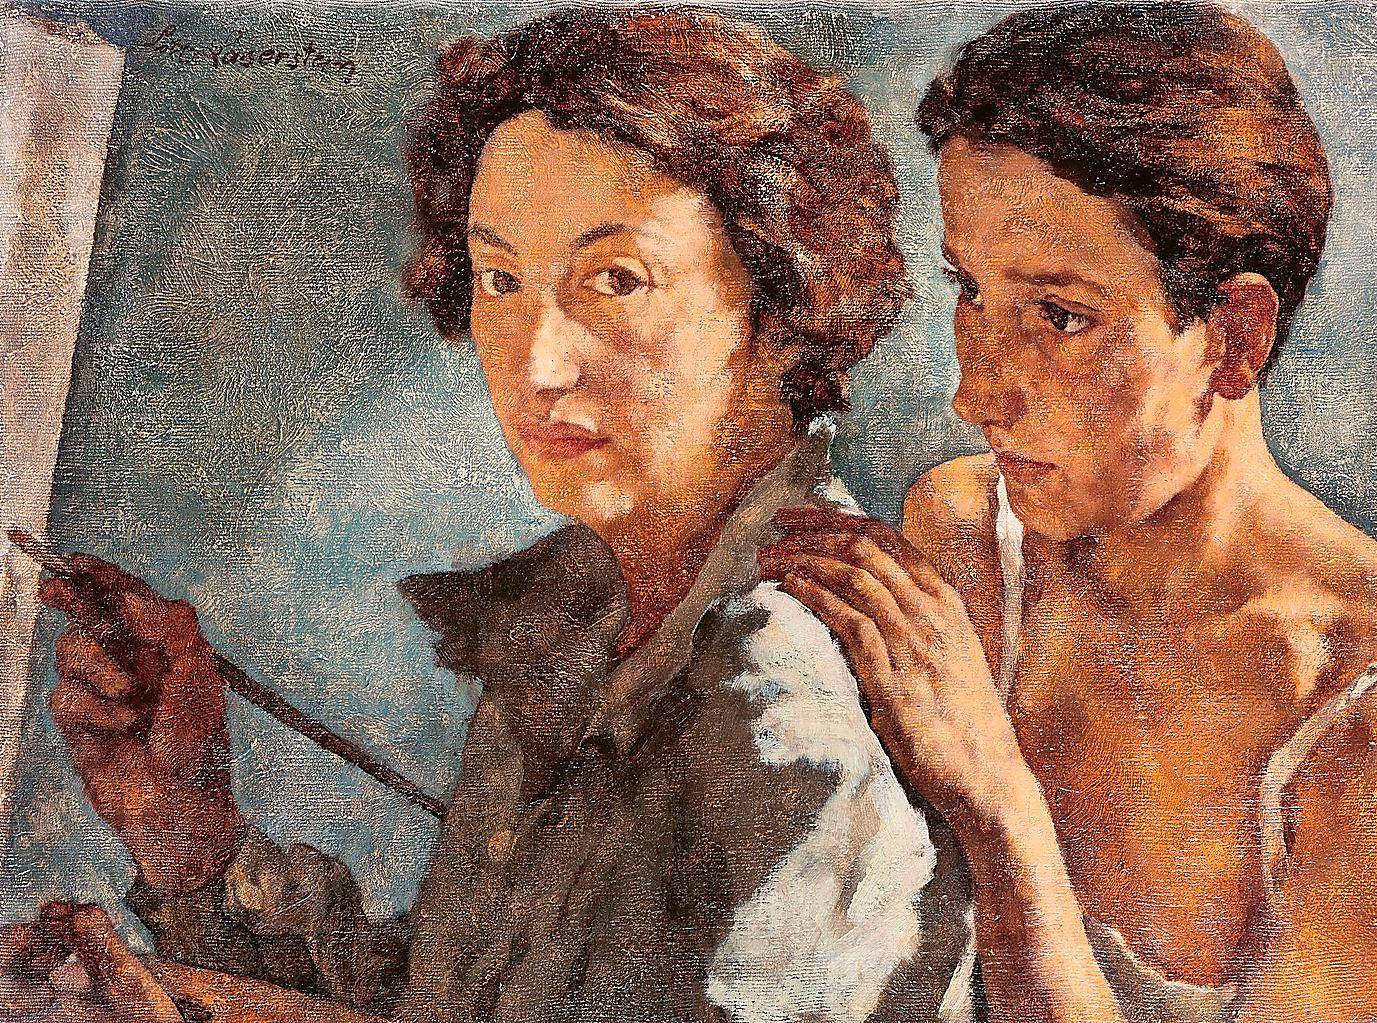 I ”Ich und mein Modell” från 1929/30 porträtterar konstnären Lotte Laserstein sig själv med modellen Traute Rose bakom sig.